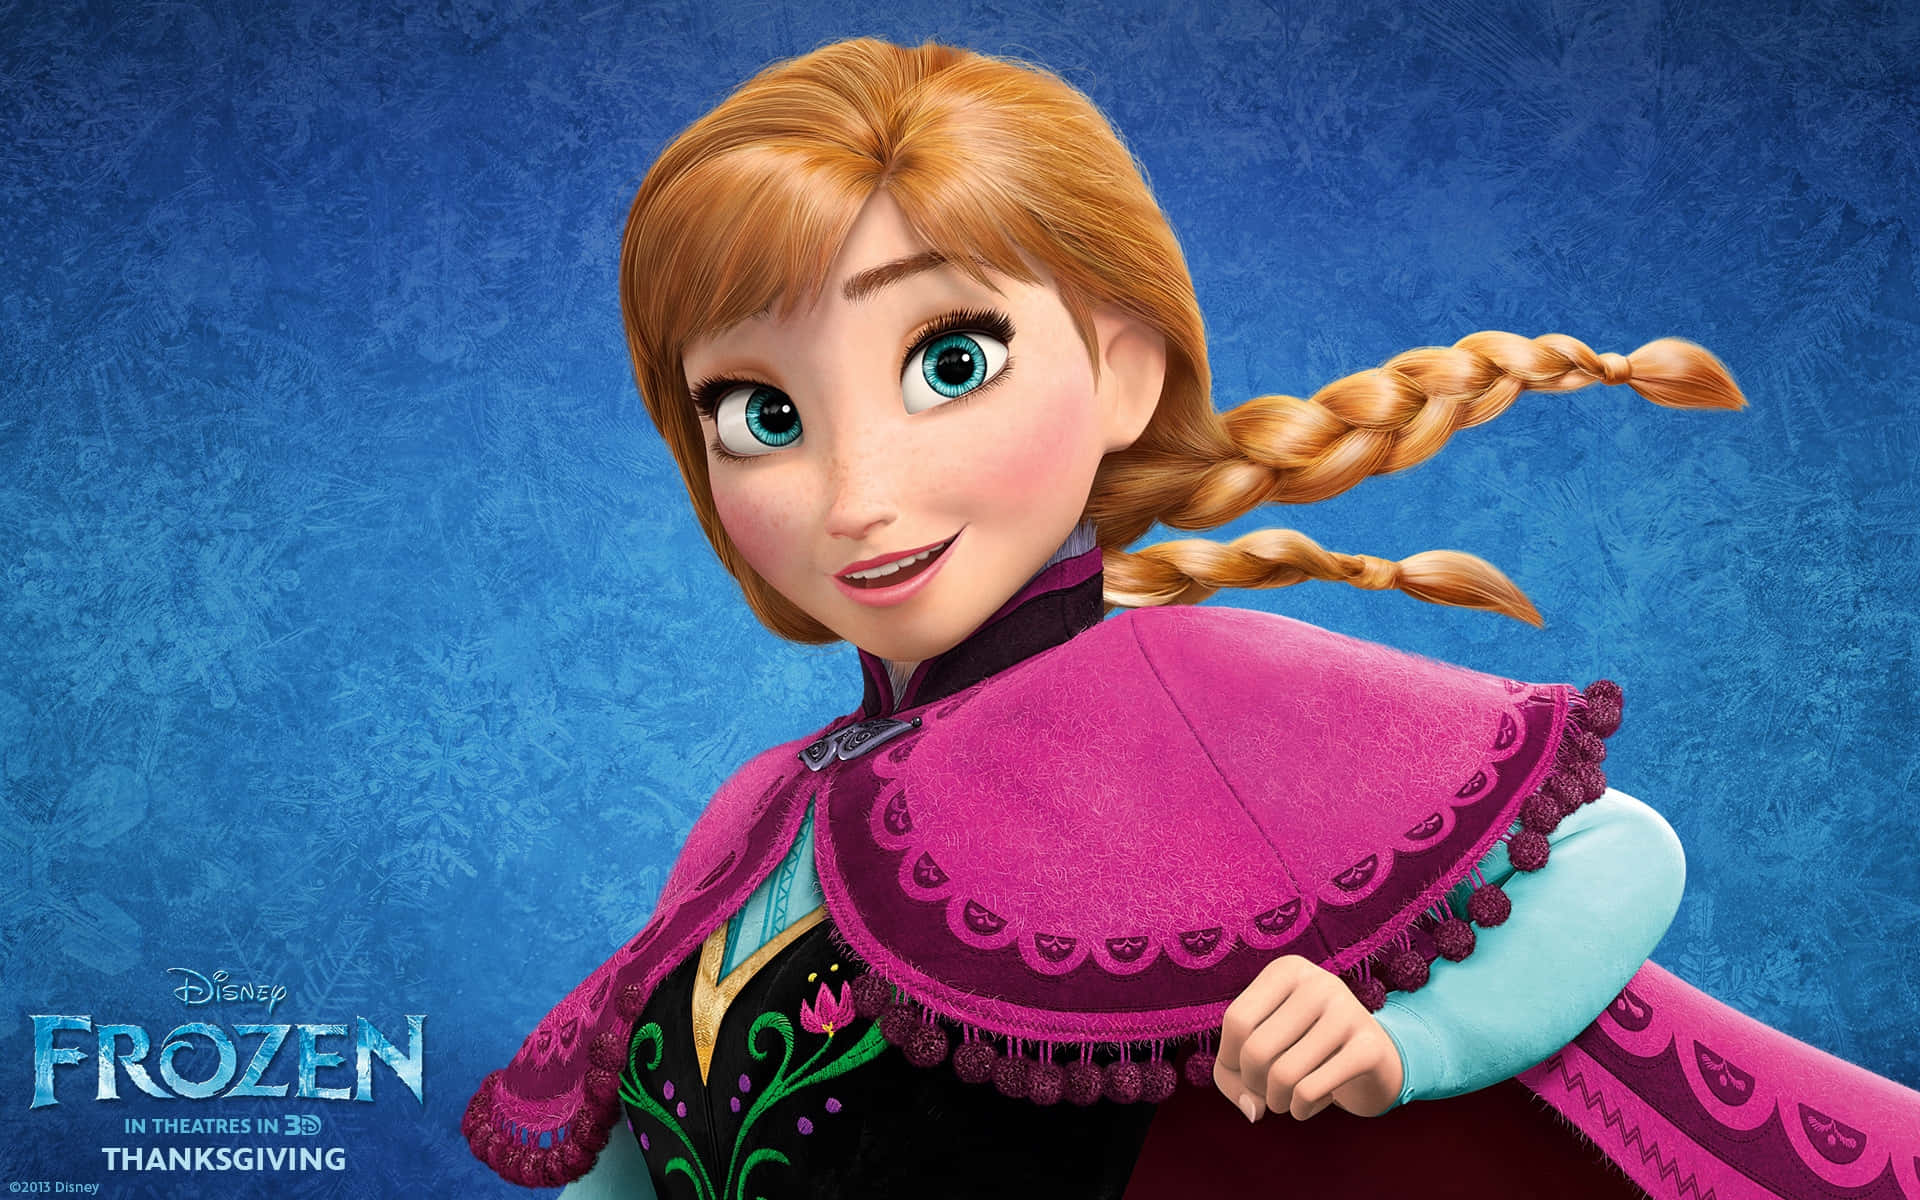 A Magical Winter Wonderland From Disney's Frozen